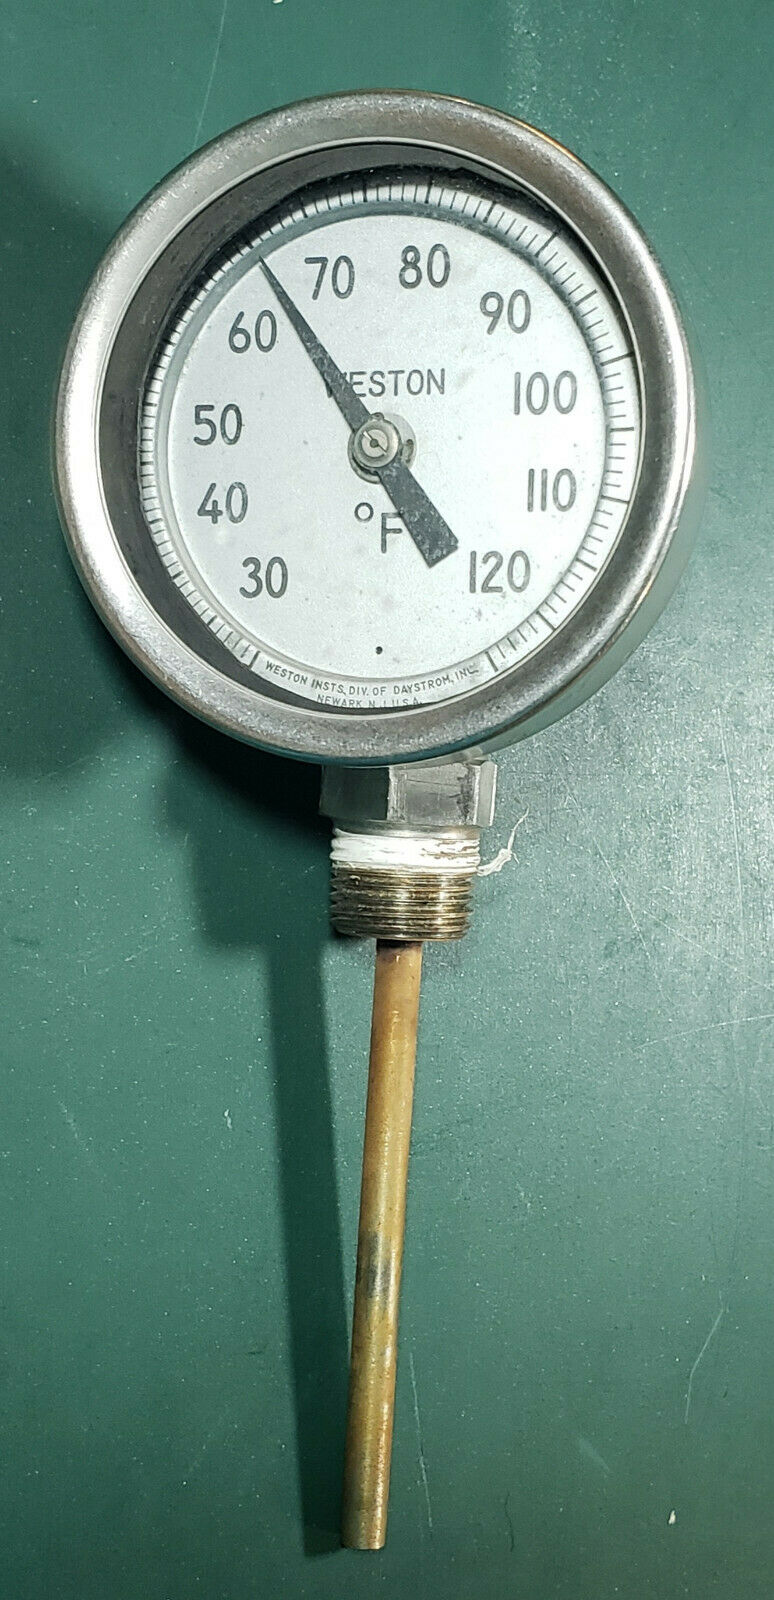 Vintage Weston Bimetal Thermometer 3” Model 4310 (-40 To 120 Degrees) Circa 1960